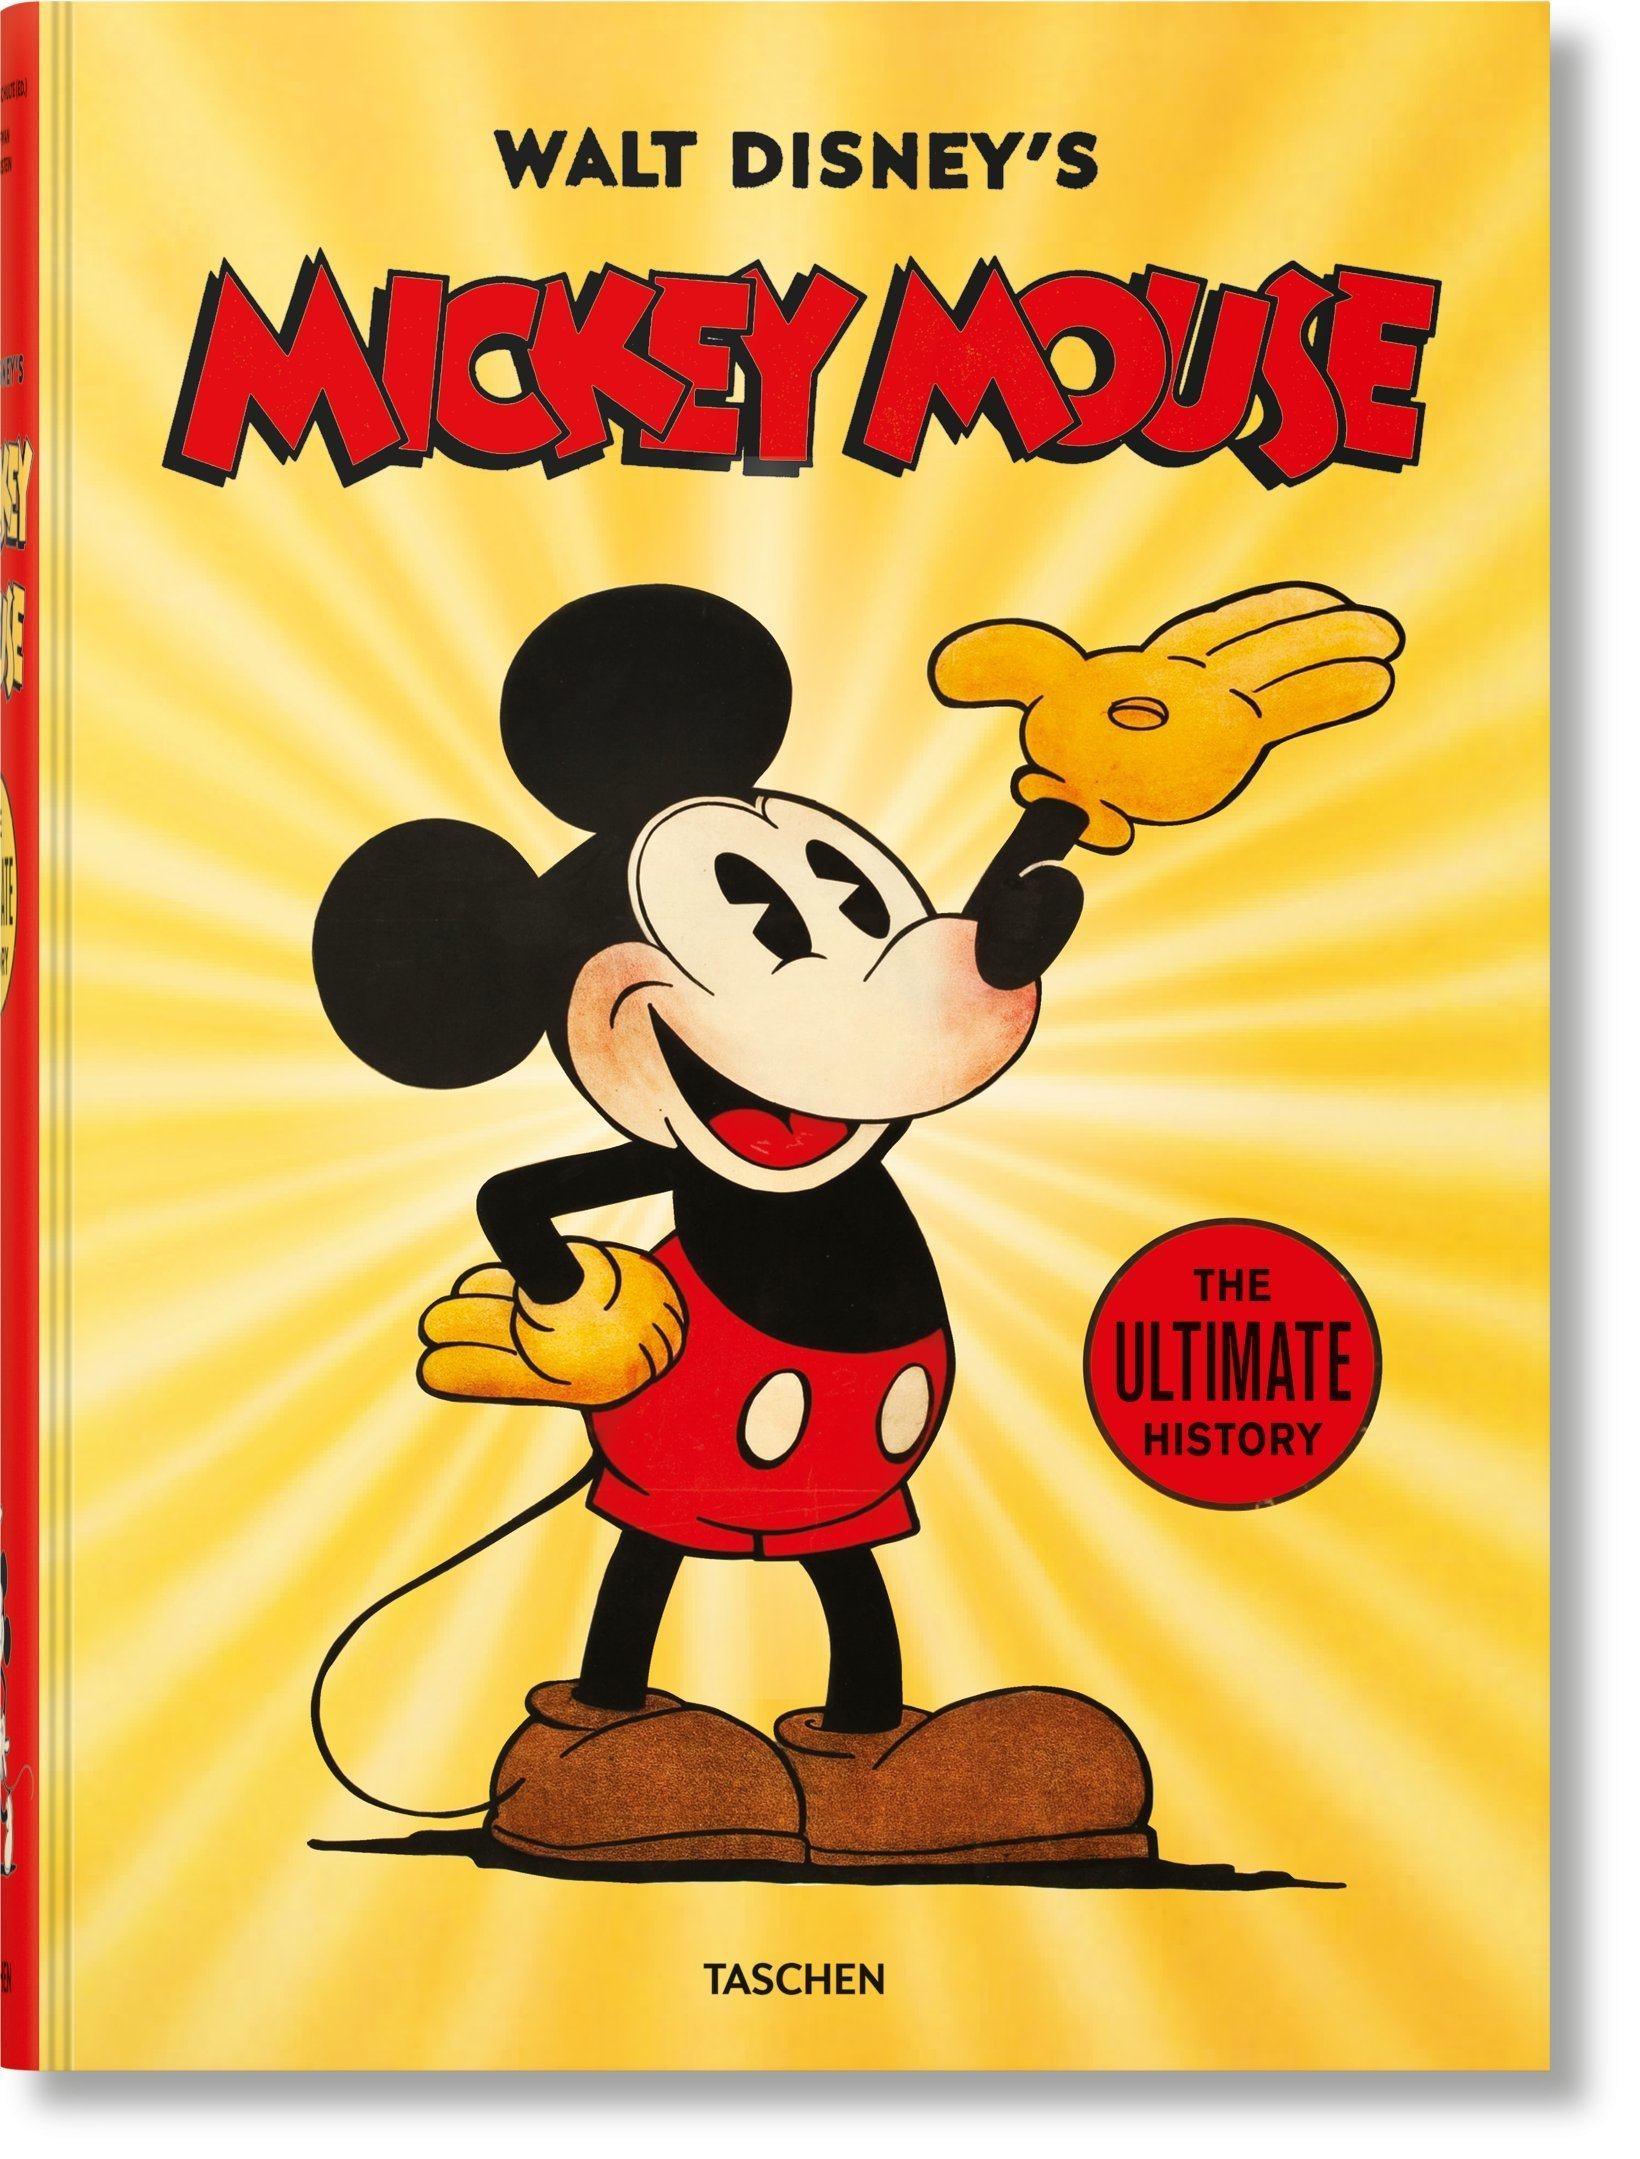 Chuột Mickey rất đẹp